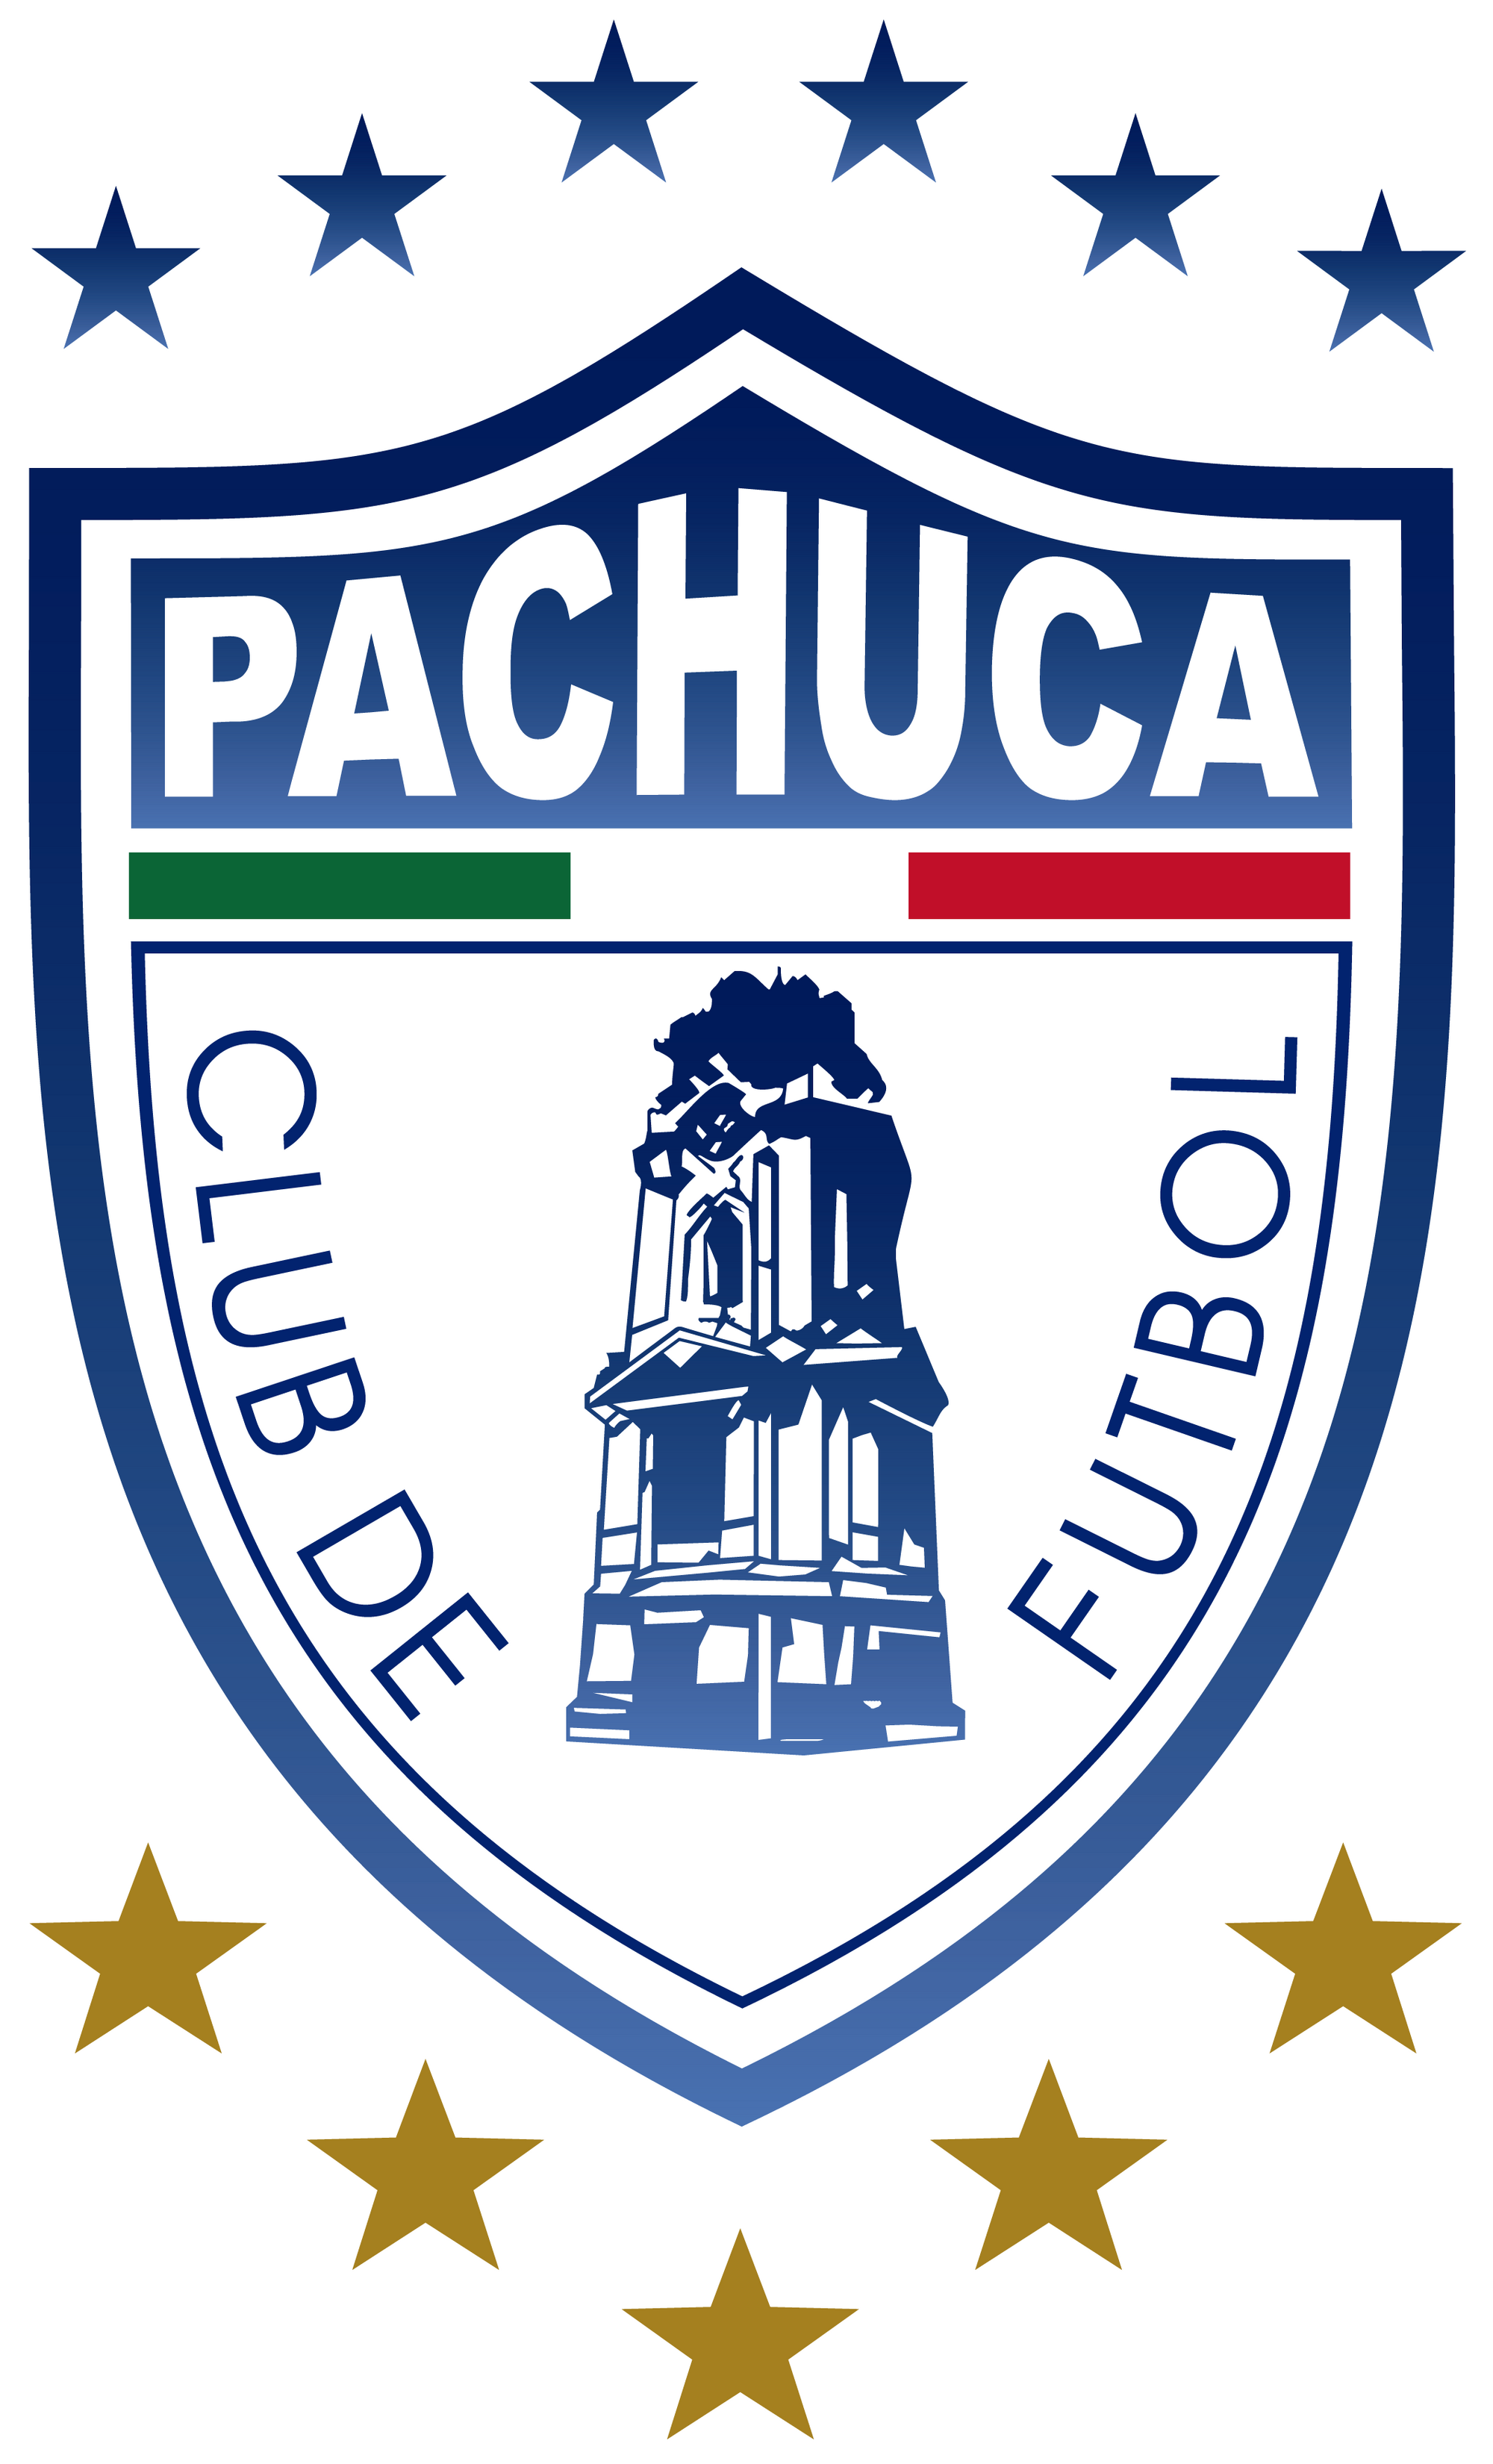 Club Pachuca Logopedia FANDOM powered by Wikia